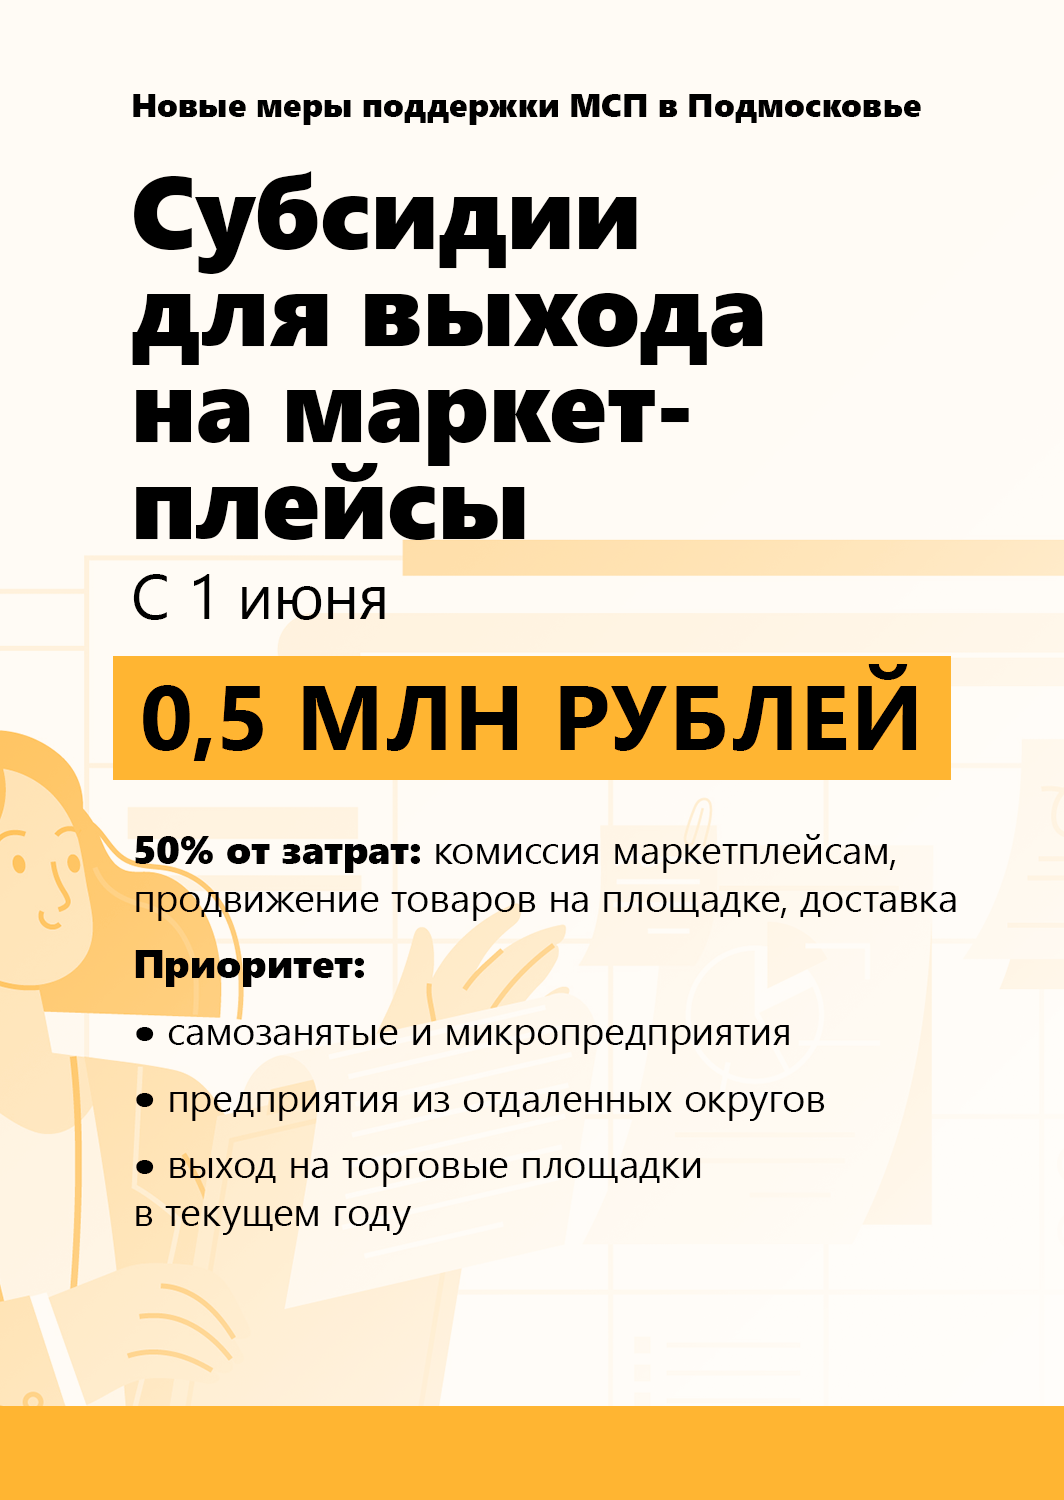 Андрей Воробьев губернатор московской области - С 1 июня мы запускаем новые меры поддержки для малого и среднего бизнеса